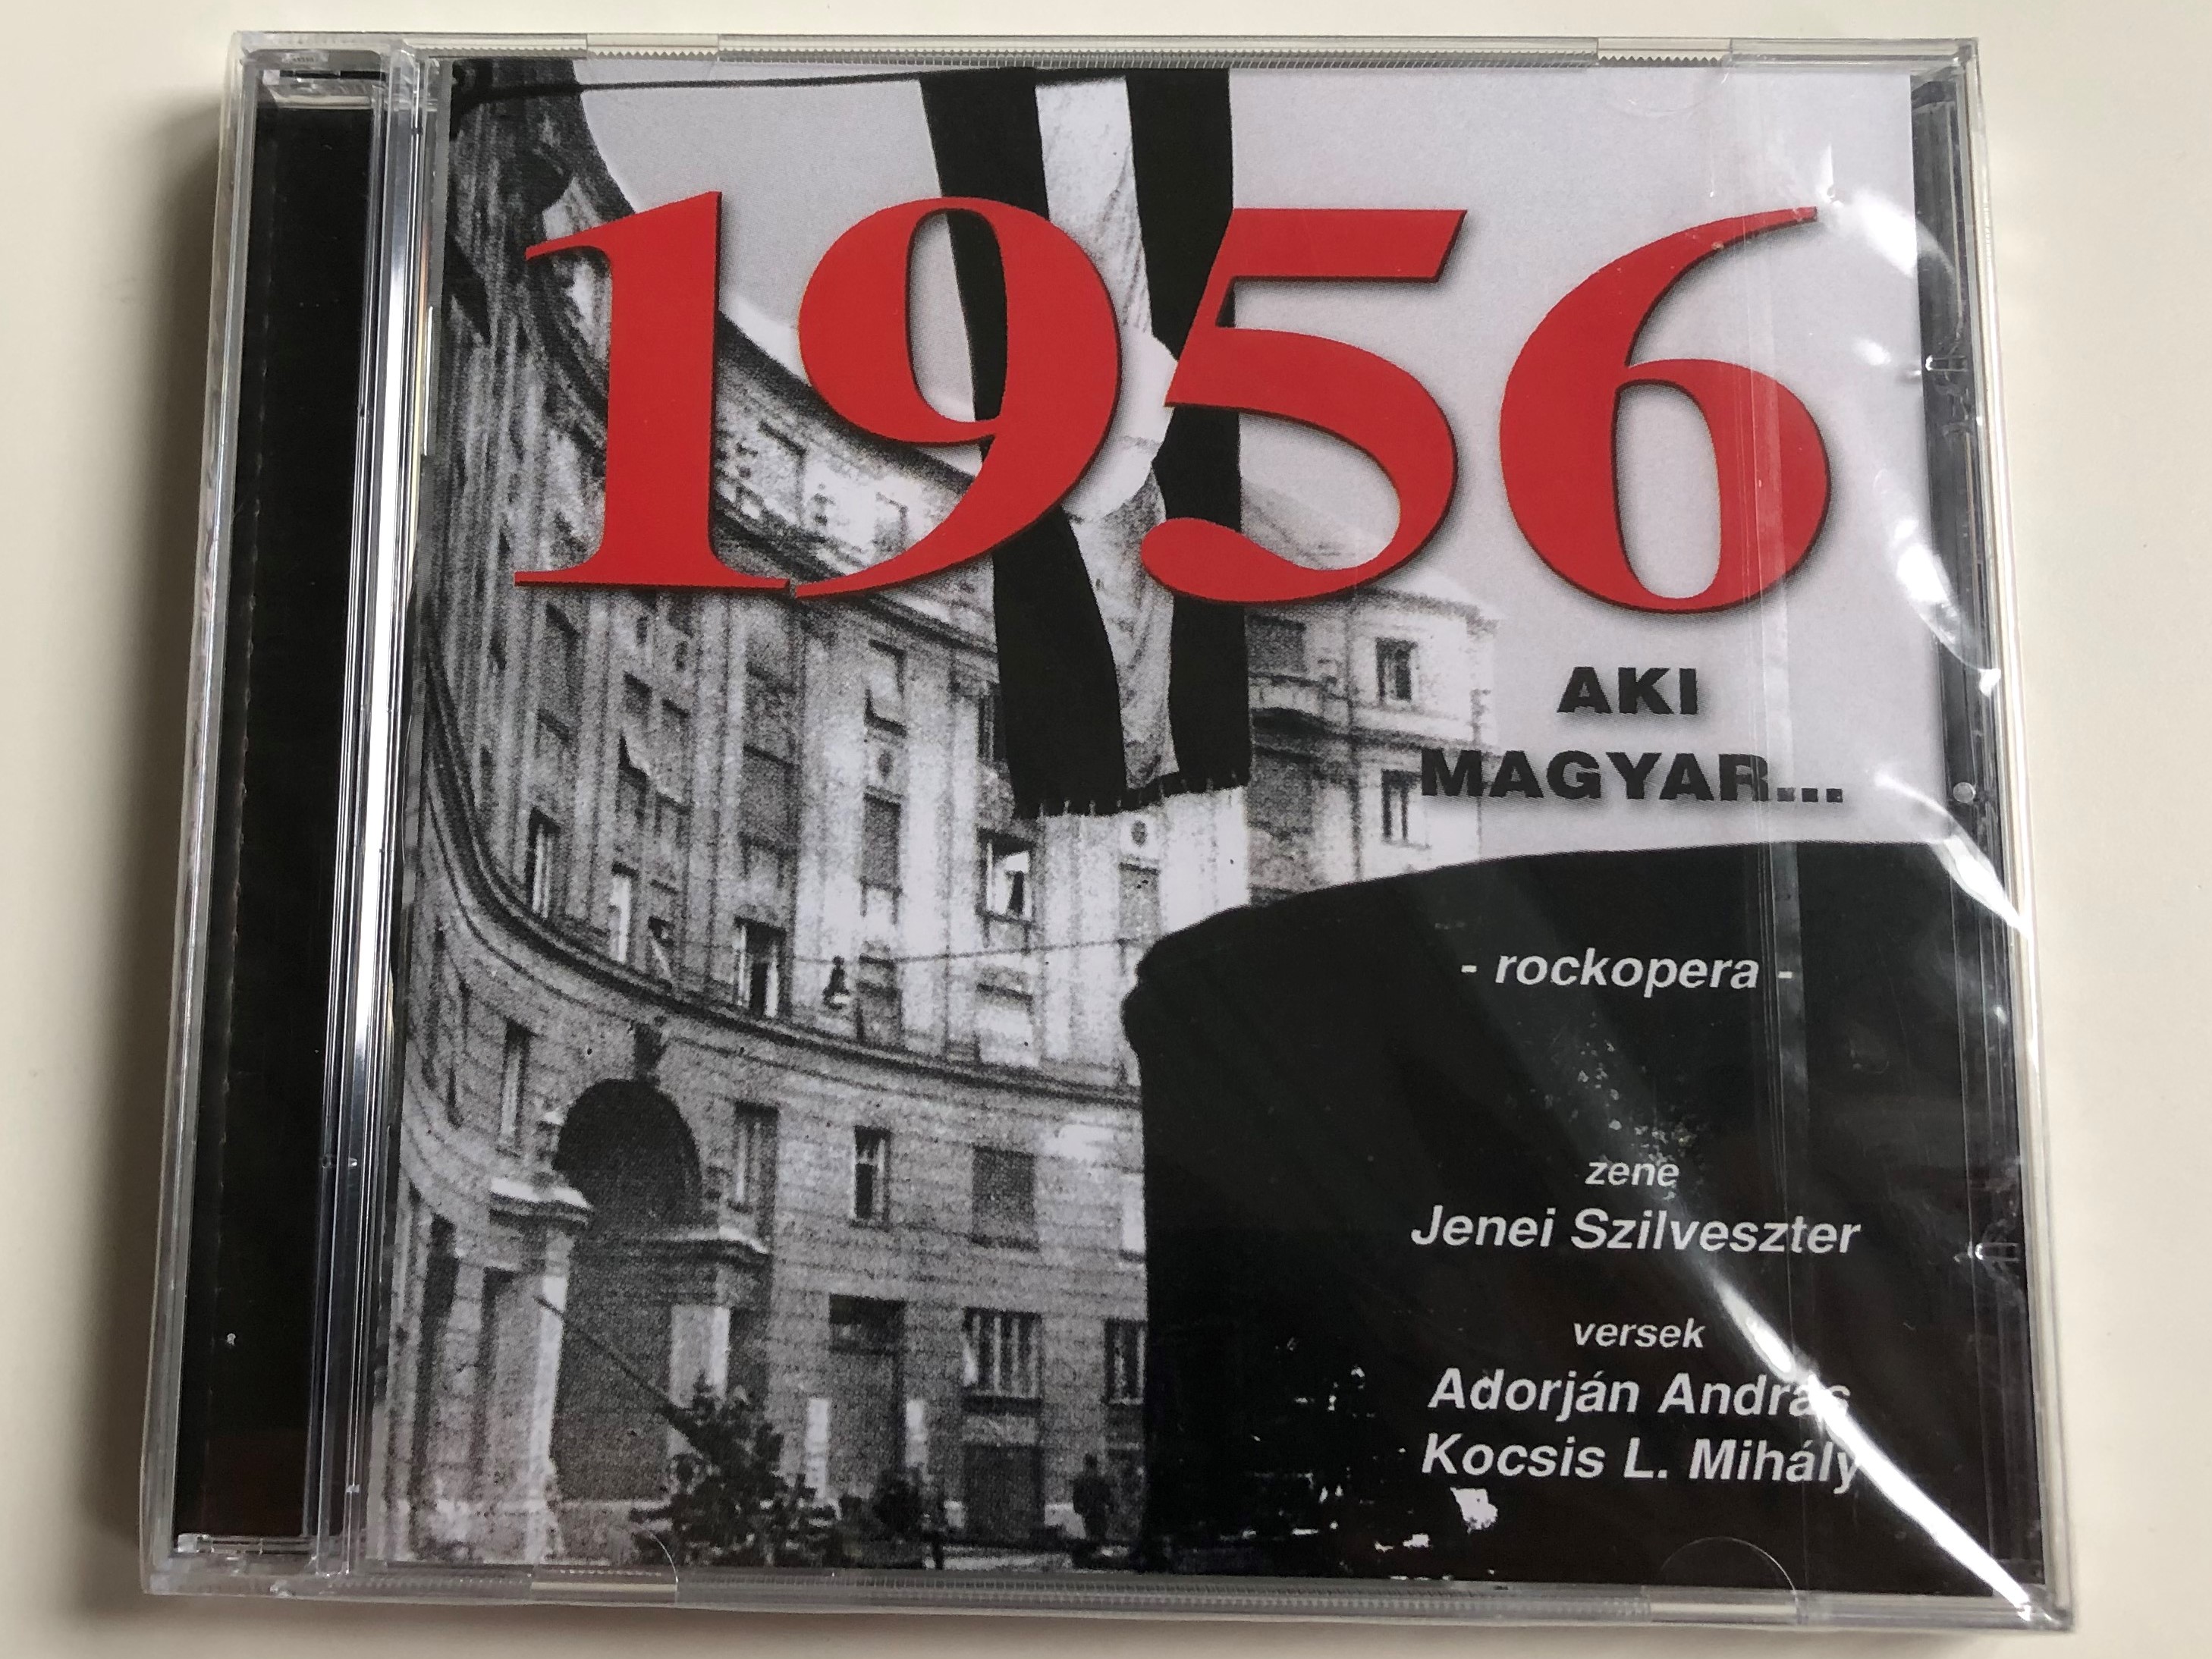 1956-aki-magyar...-rockopera-zene-jenei-szilveszter-versek-adorjan-andras-kocsis-l.-mihaly-sylvester-records-audio-cd-srcd-07-1-.jpg